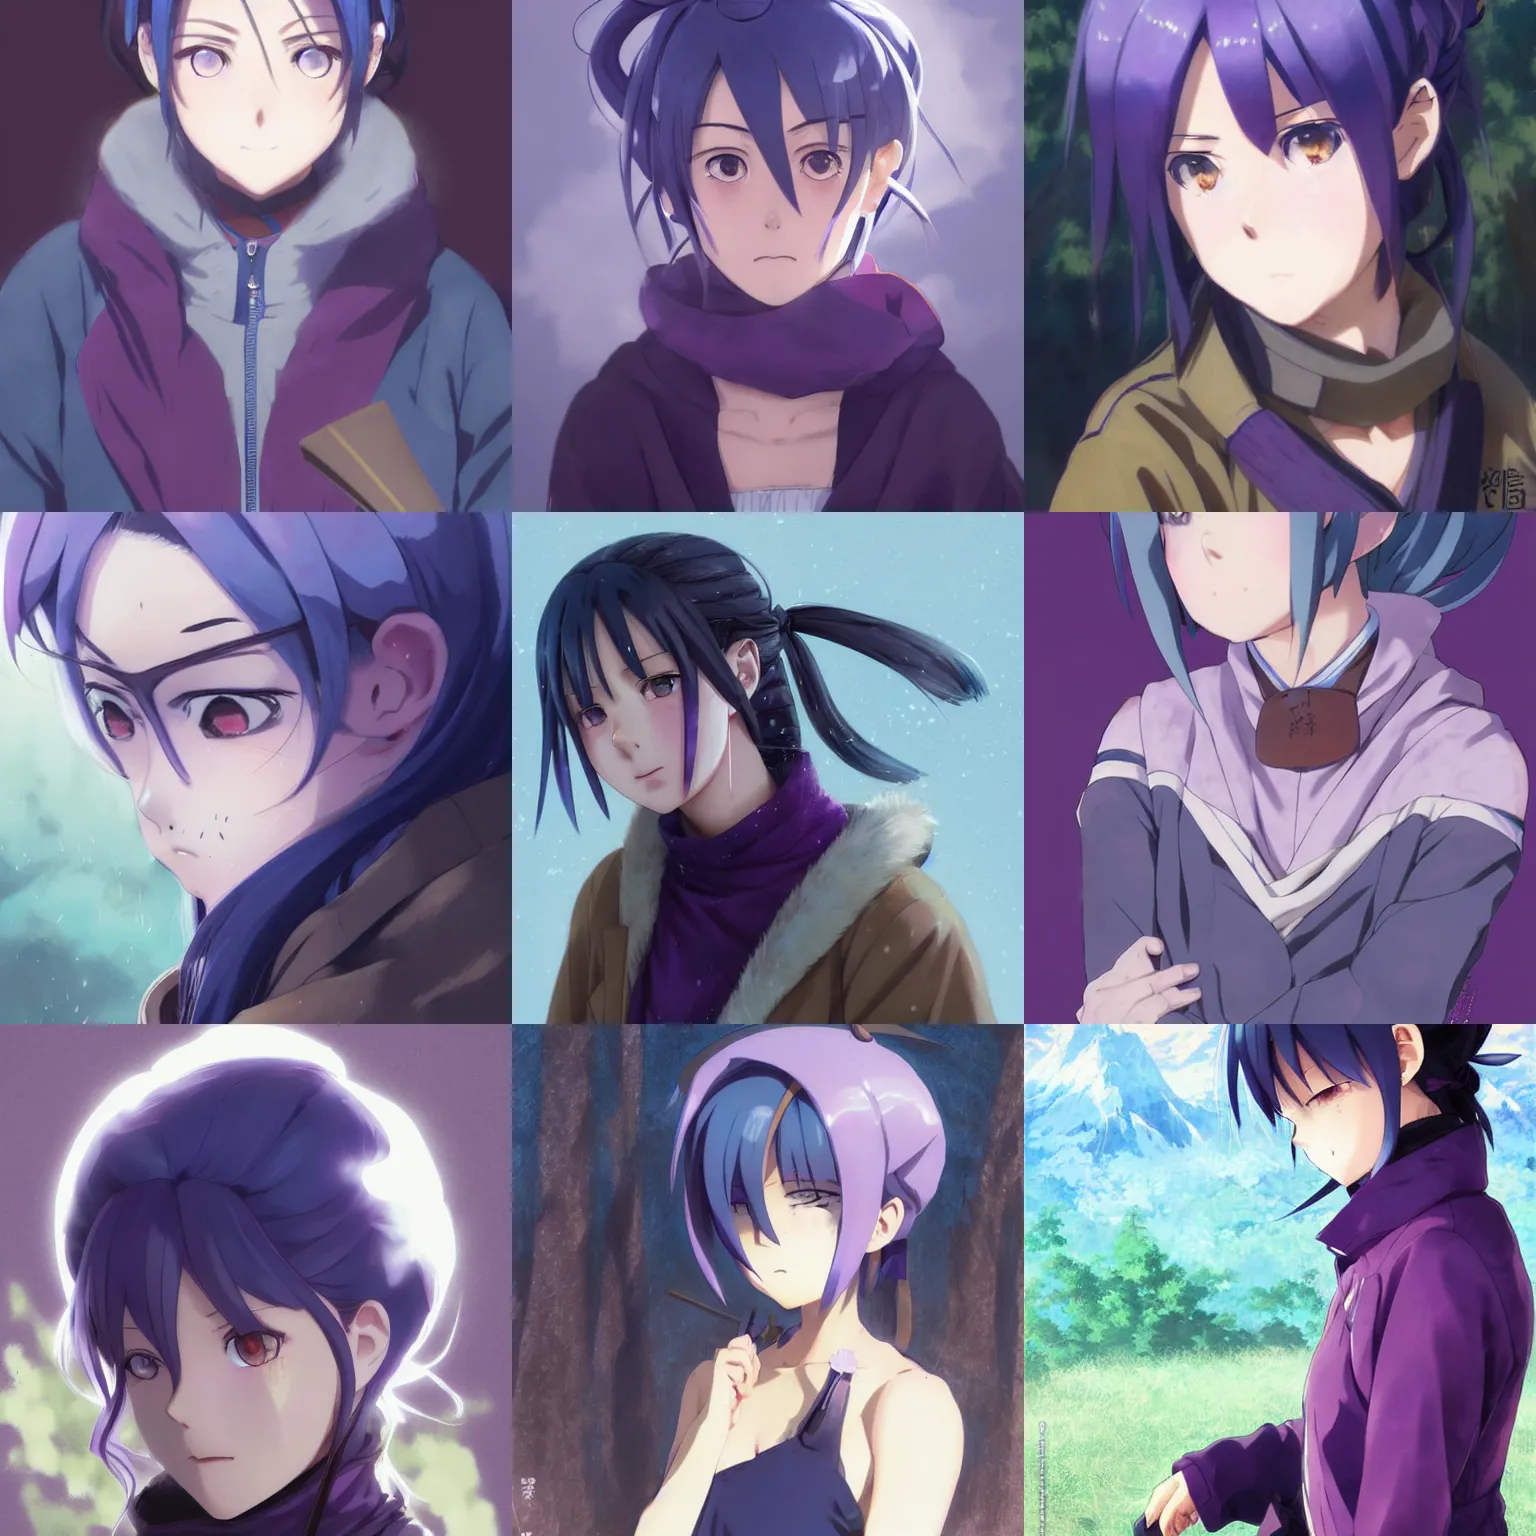 Prompt: anime shima rin shimarin yuru camp dark - blue hair tied in a high bun purple violet eyes portrait by greg rutkowski